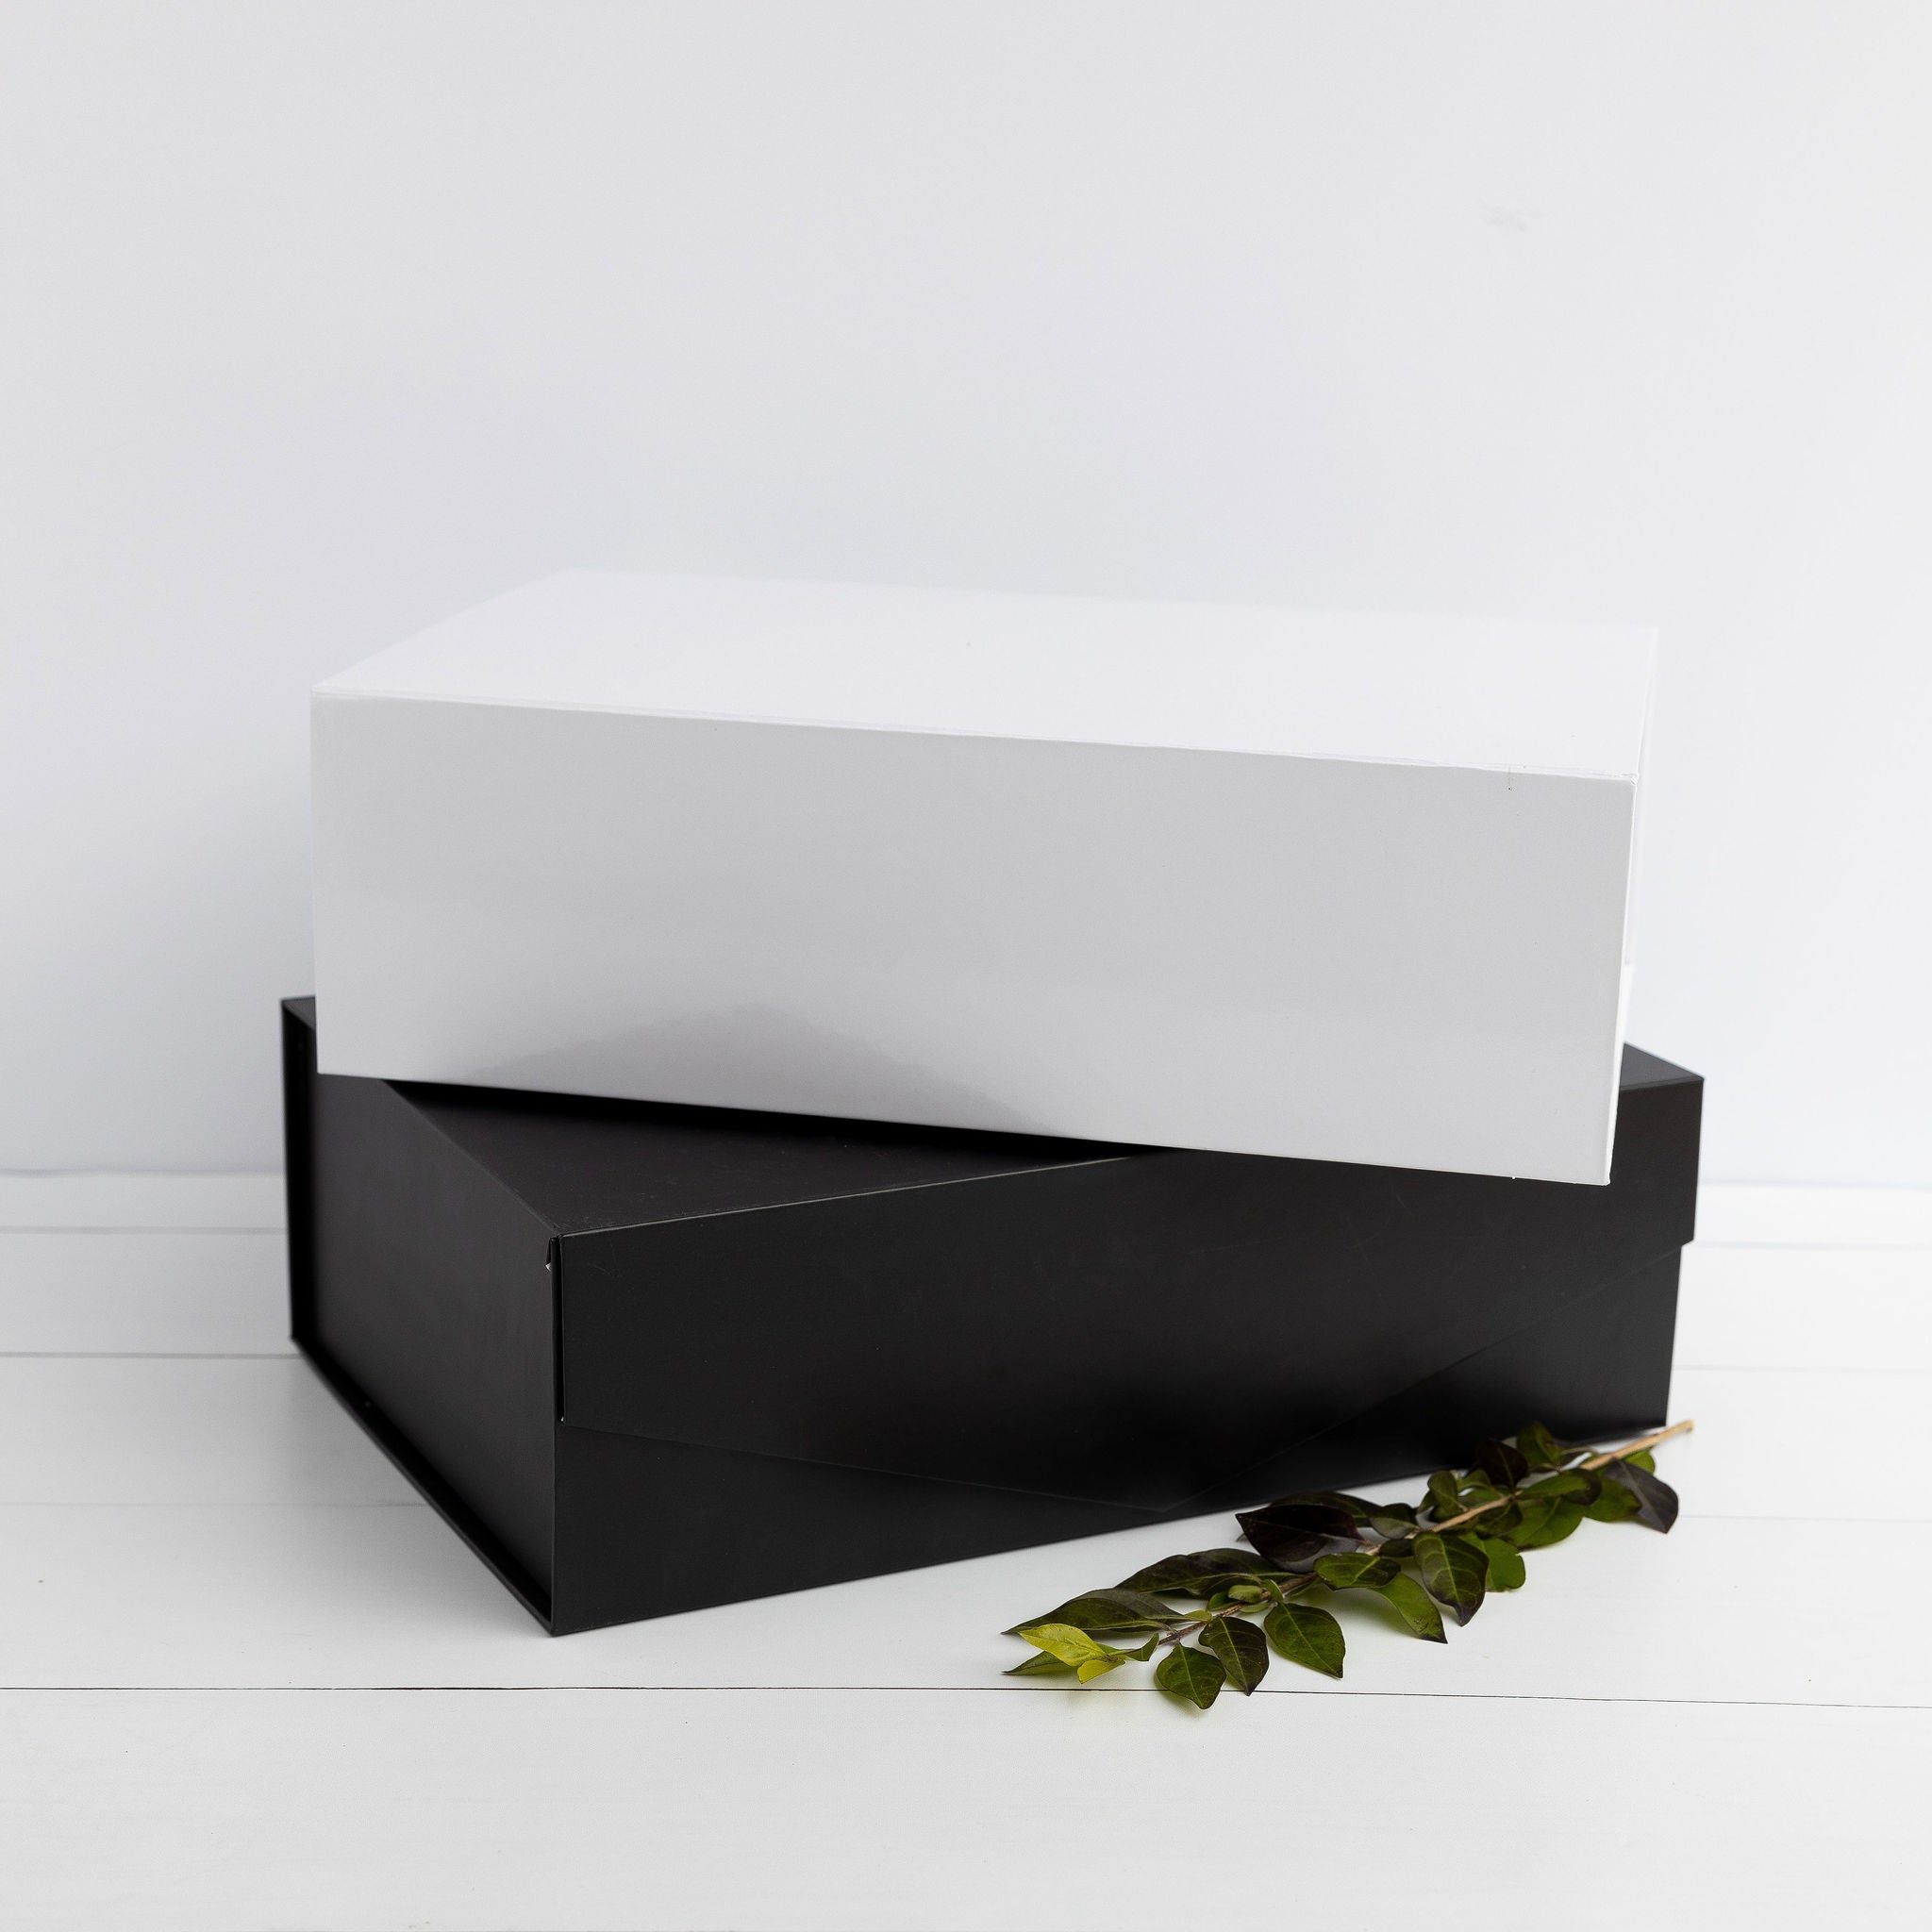 New Home Starter Gift Box